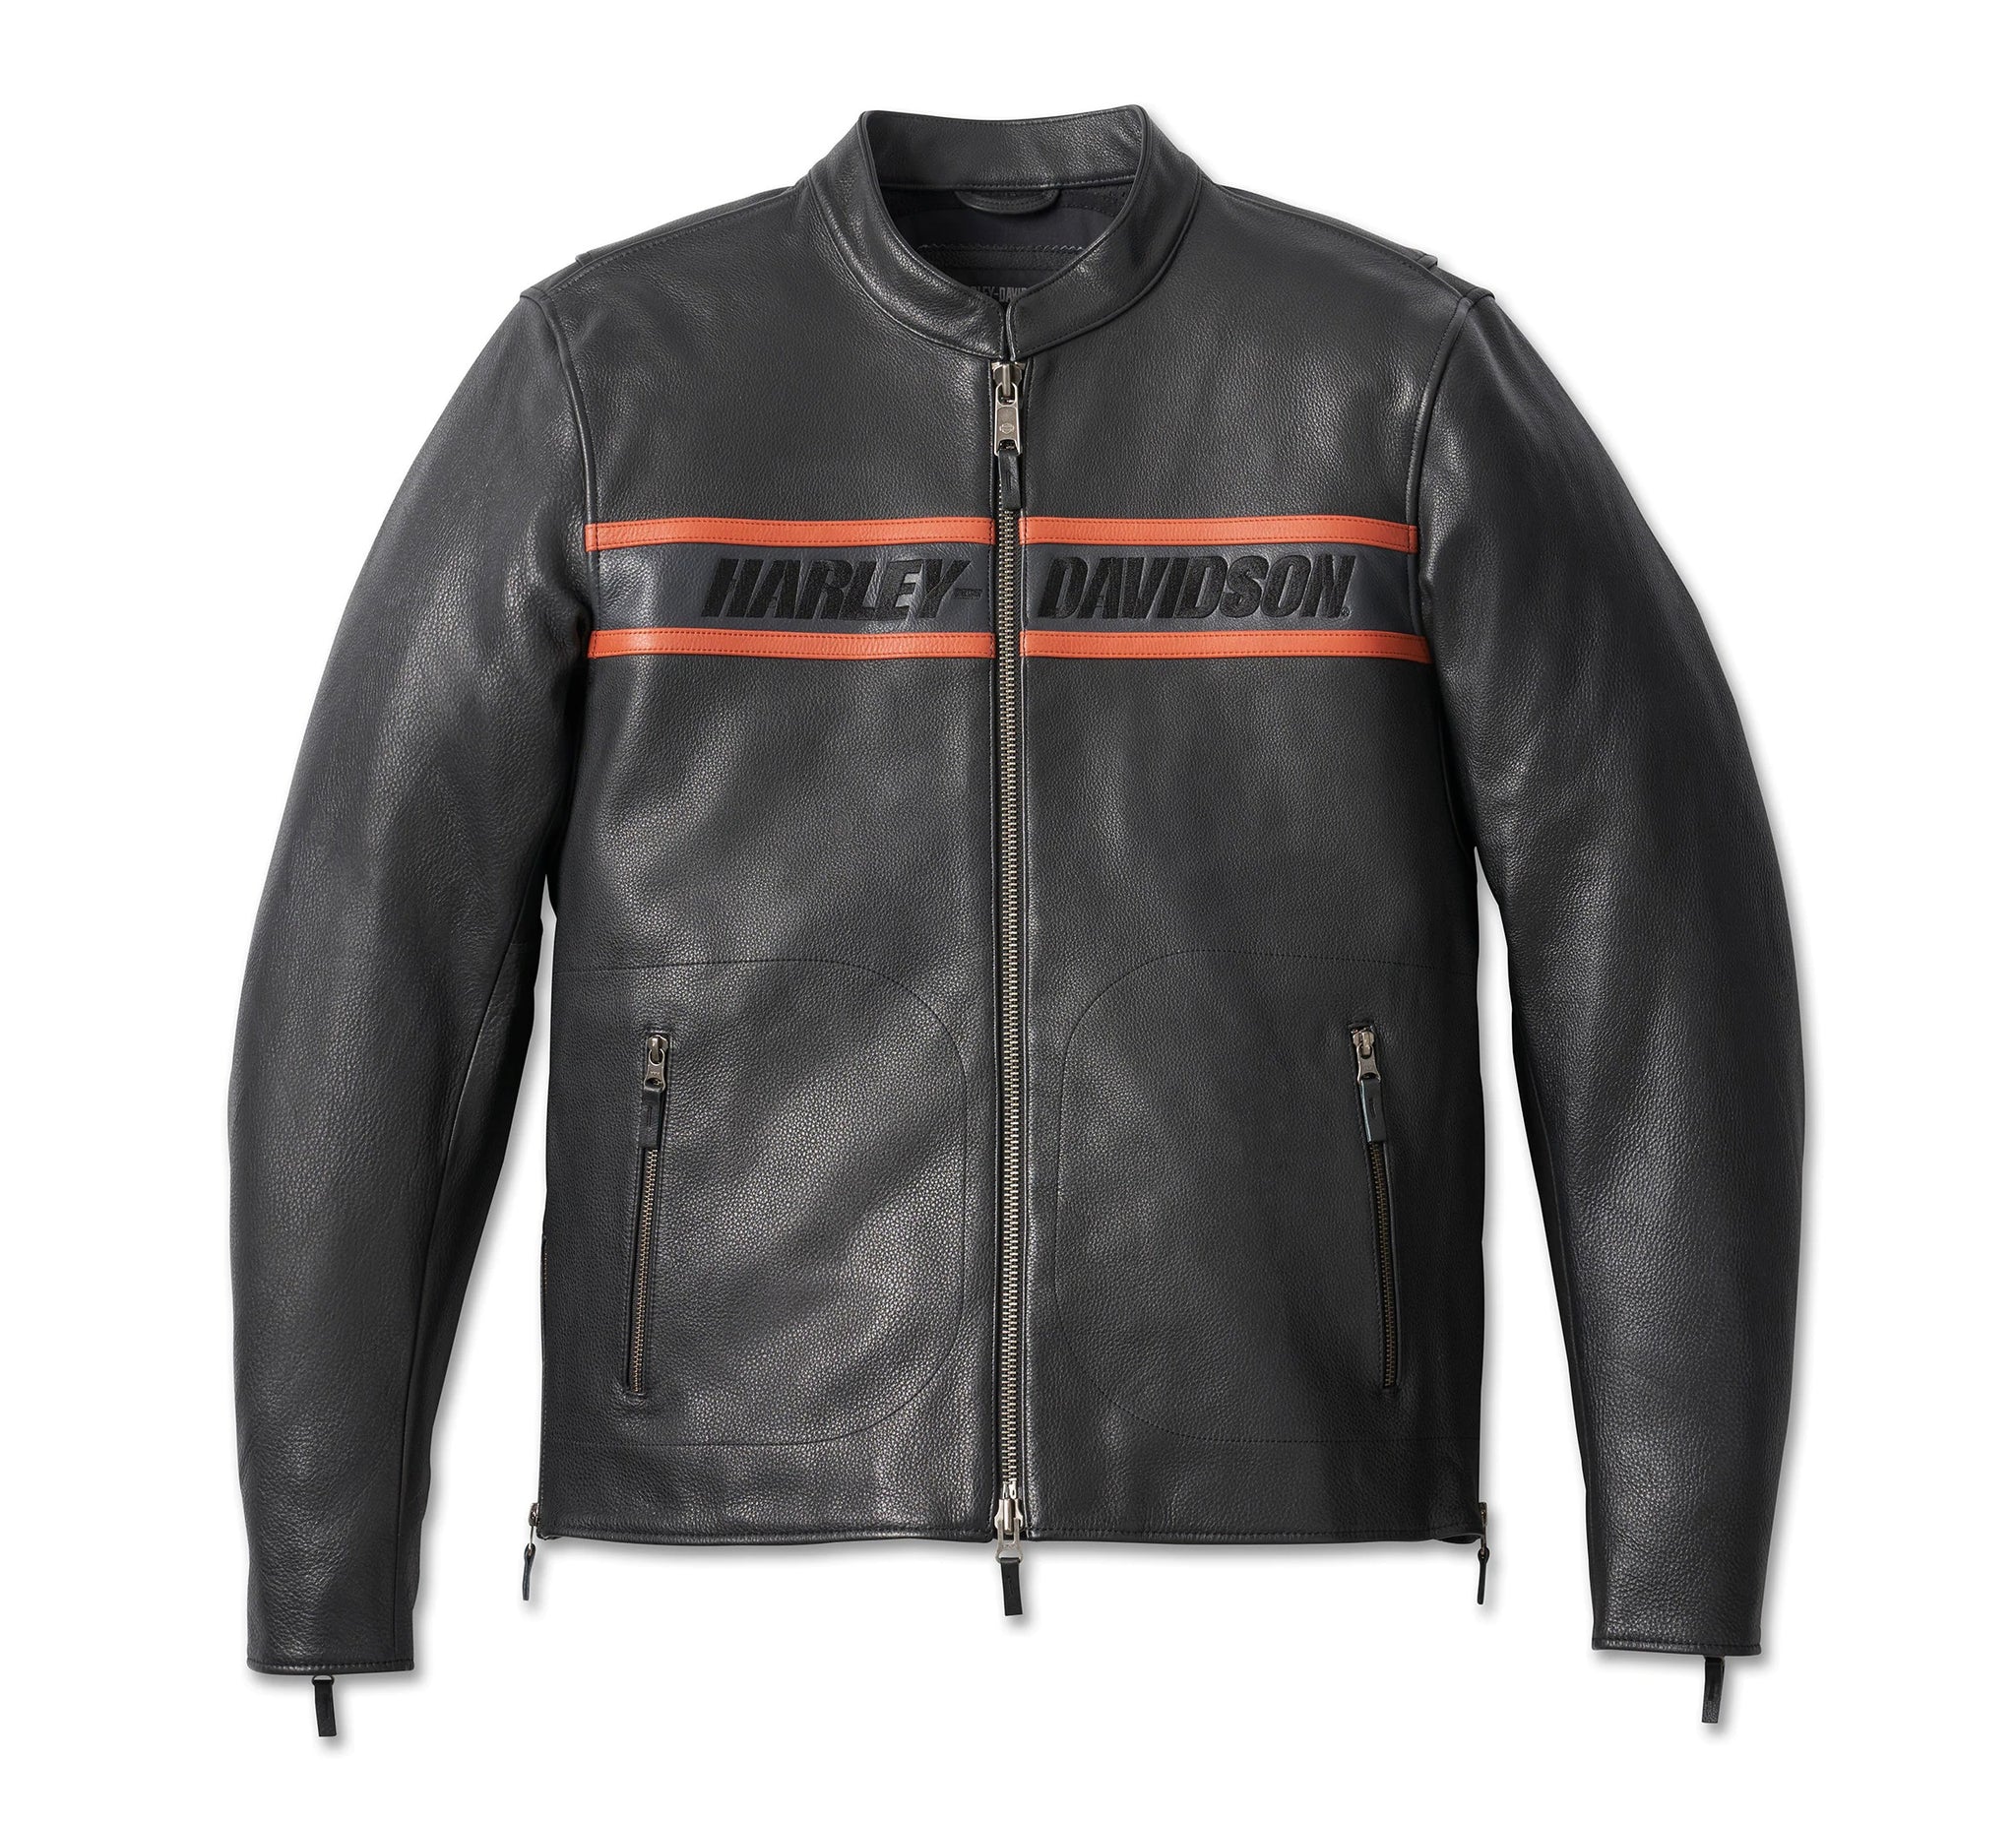 Harley-Davidson Men's Jackets & Vests - Rolling Thunder Harley-Davidson